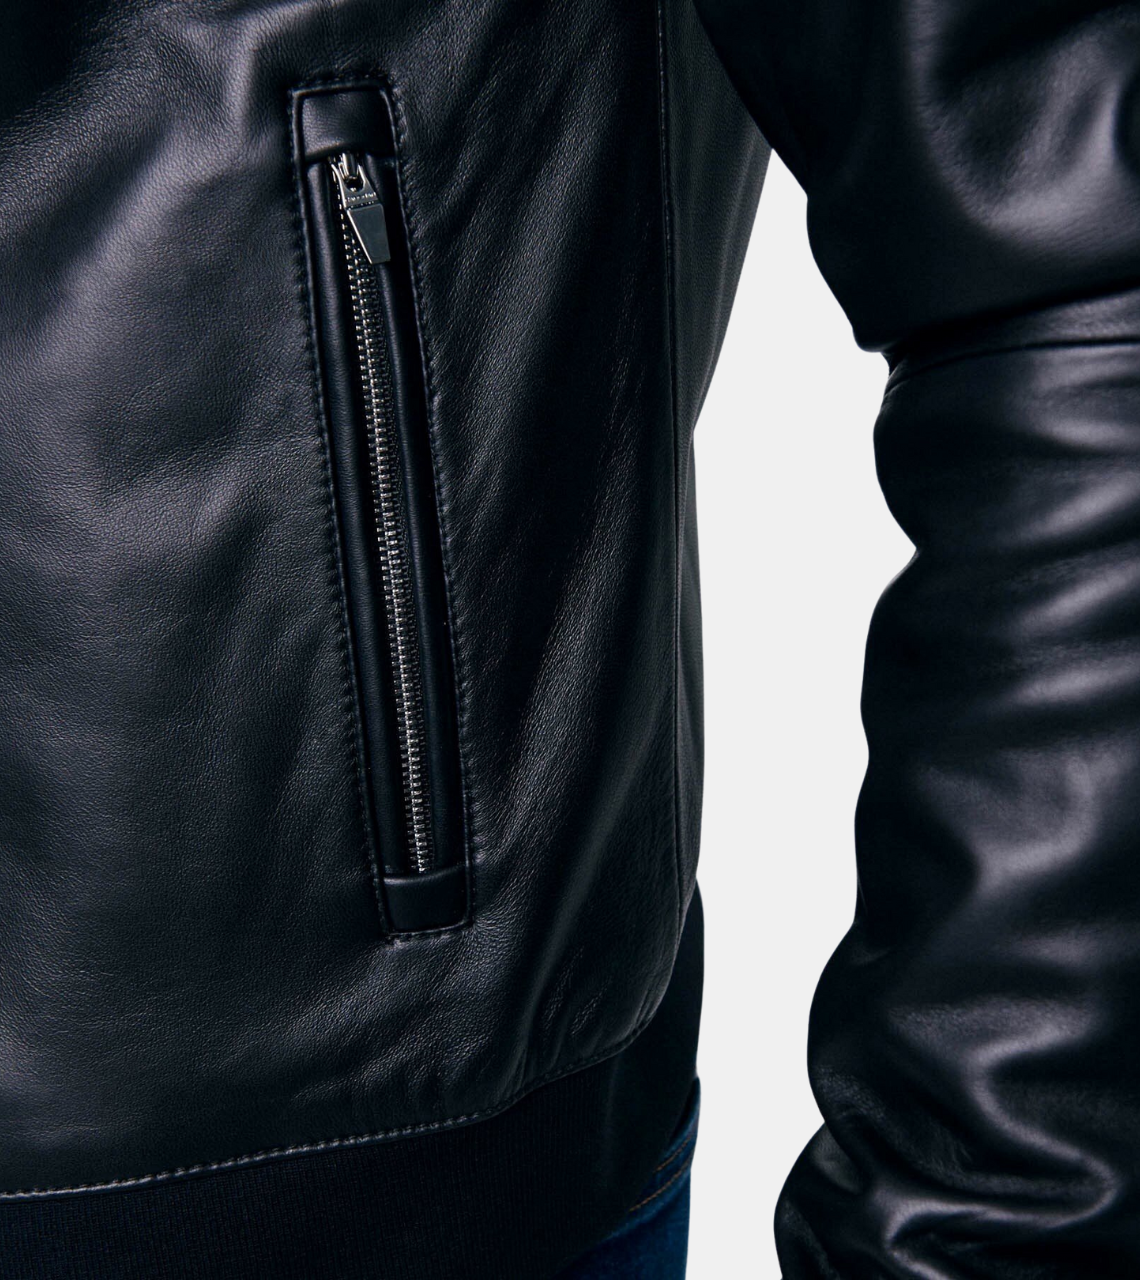 Clifer Men's Black Bomber Leather Jacket Pocket